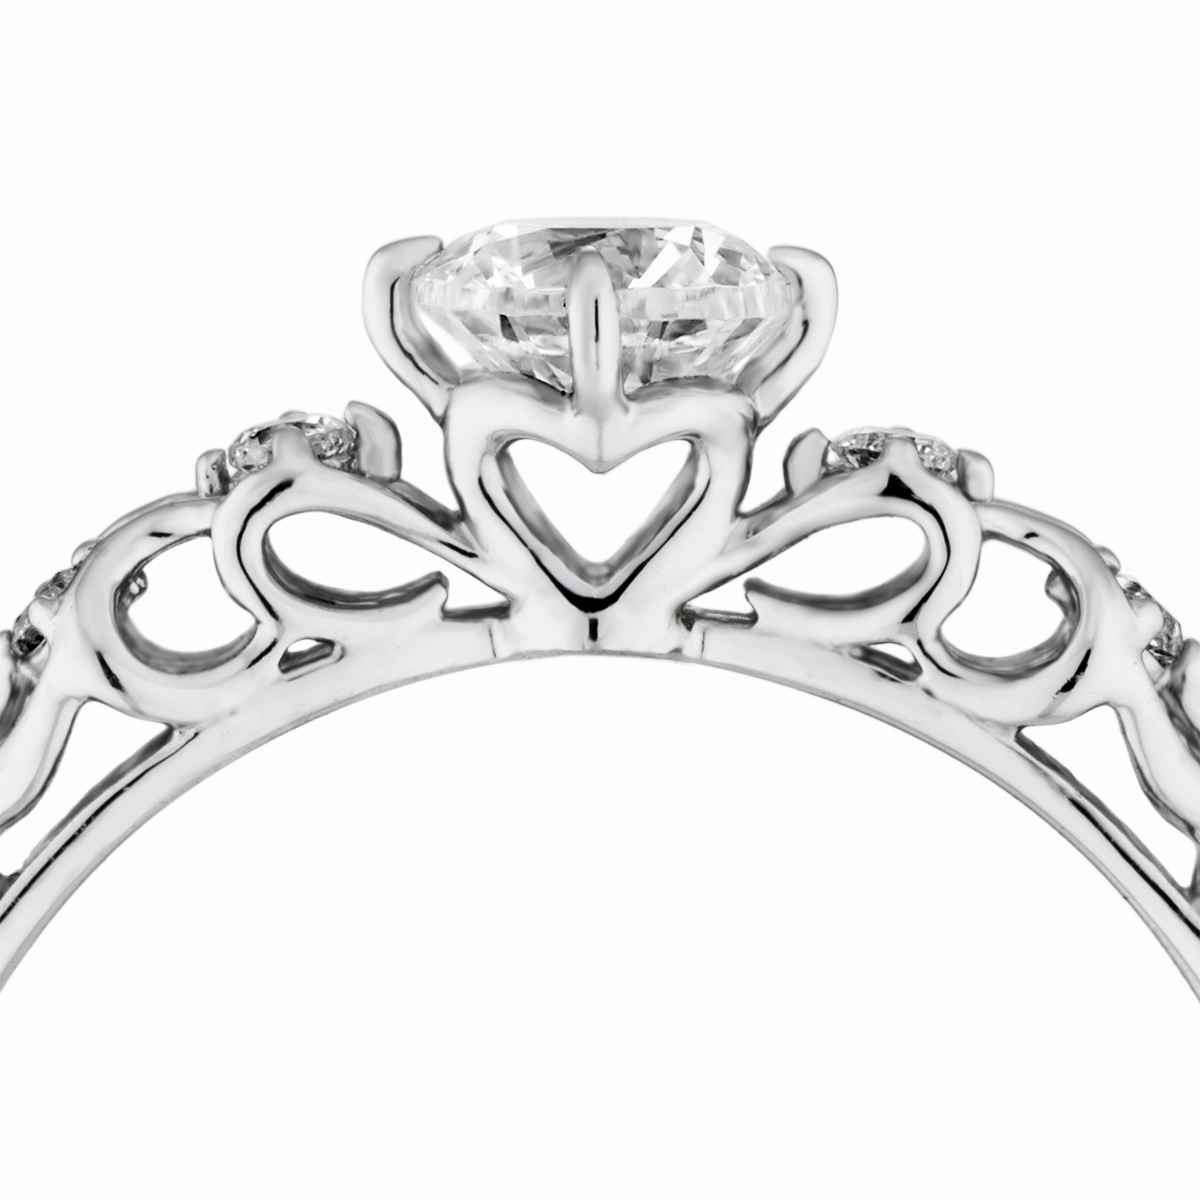 婚約指輪-アンティークレースのような繊細な透かし模様が個性的な